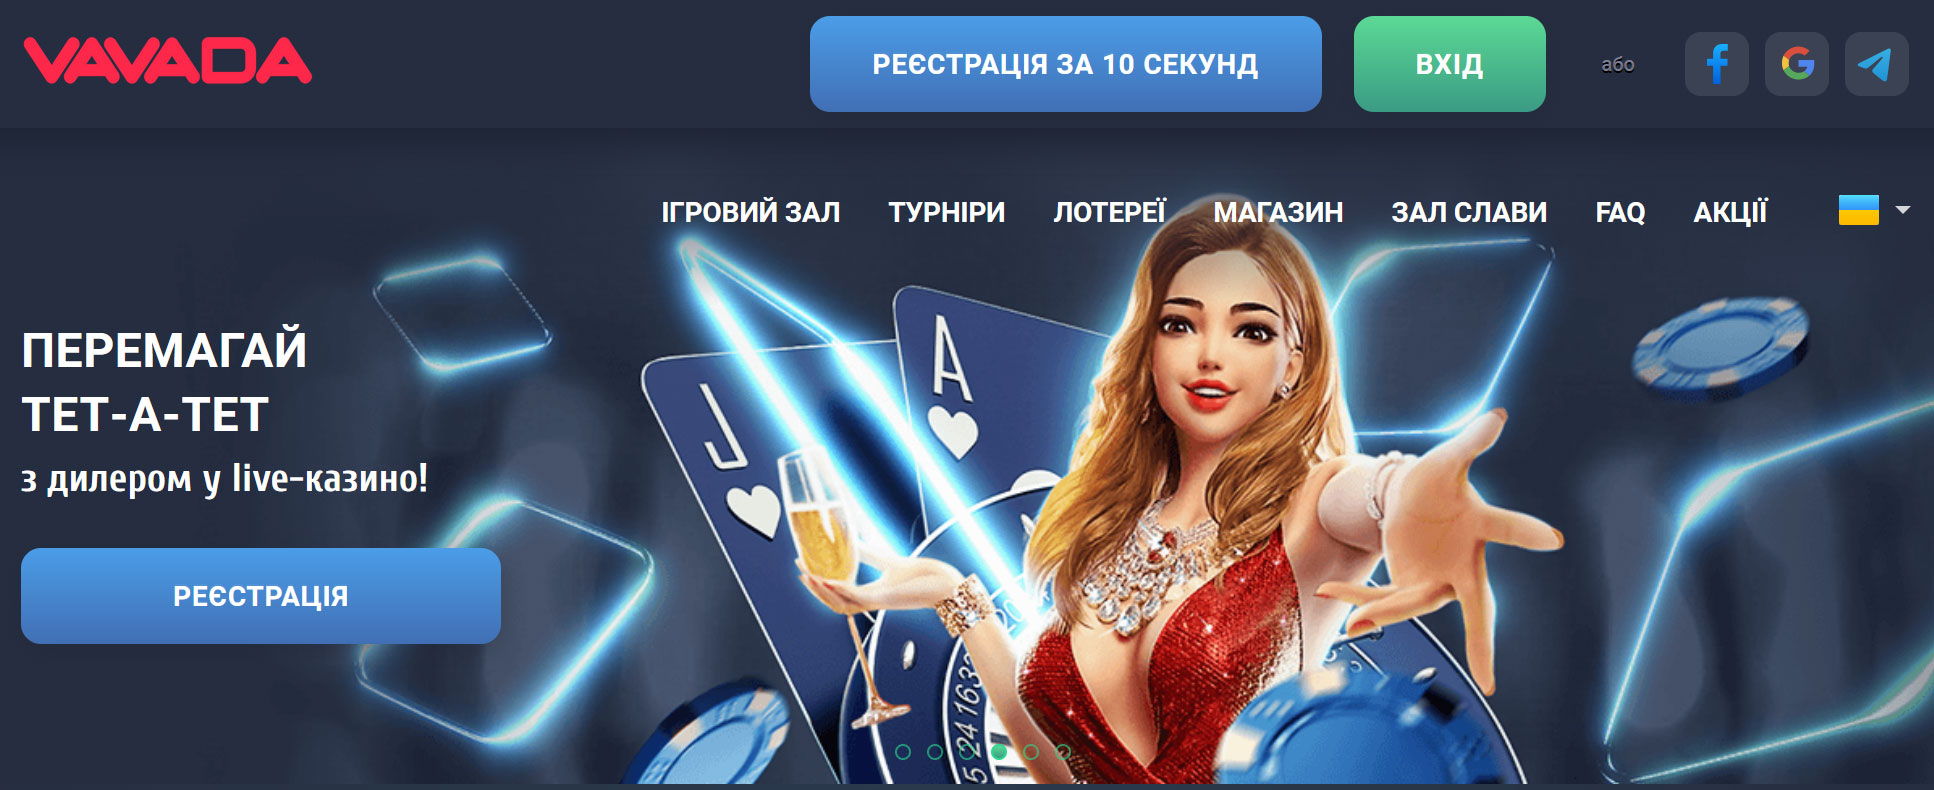 Щедрые бонусы и увлекательные слоты в онлайн-казино Vavada